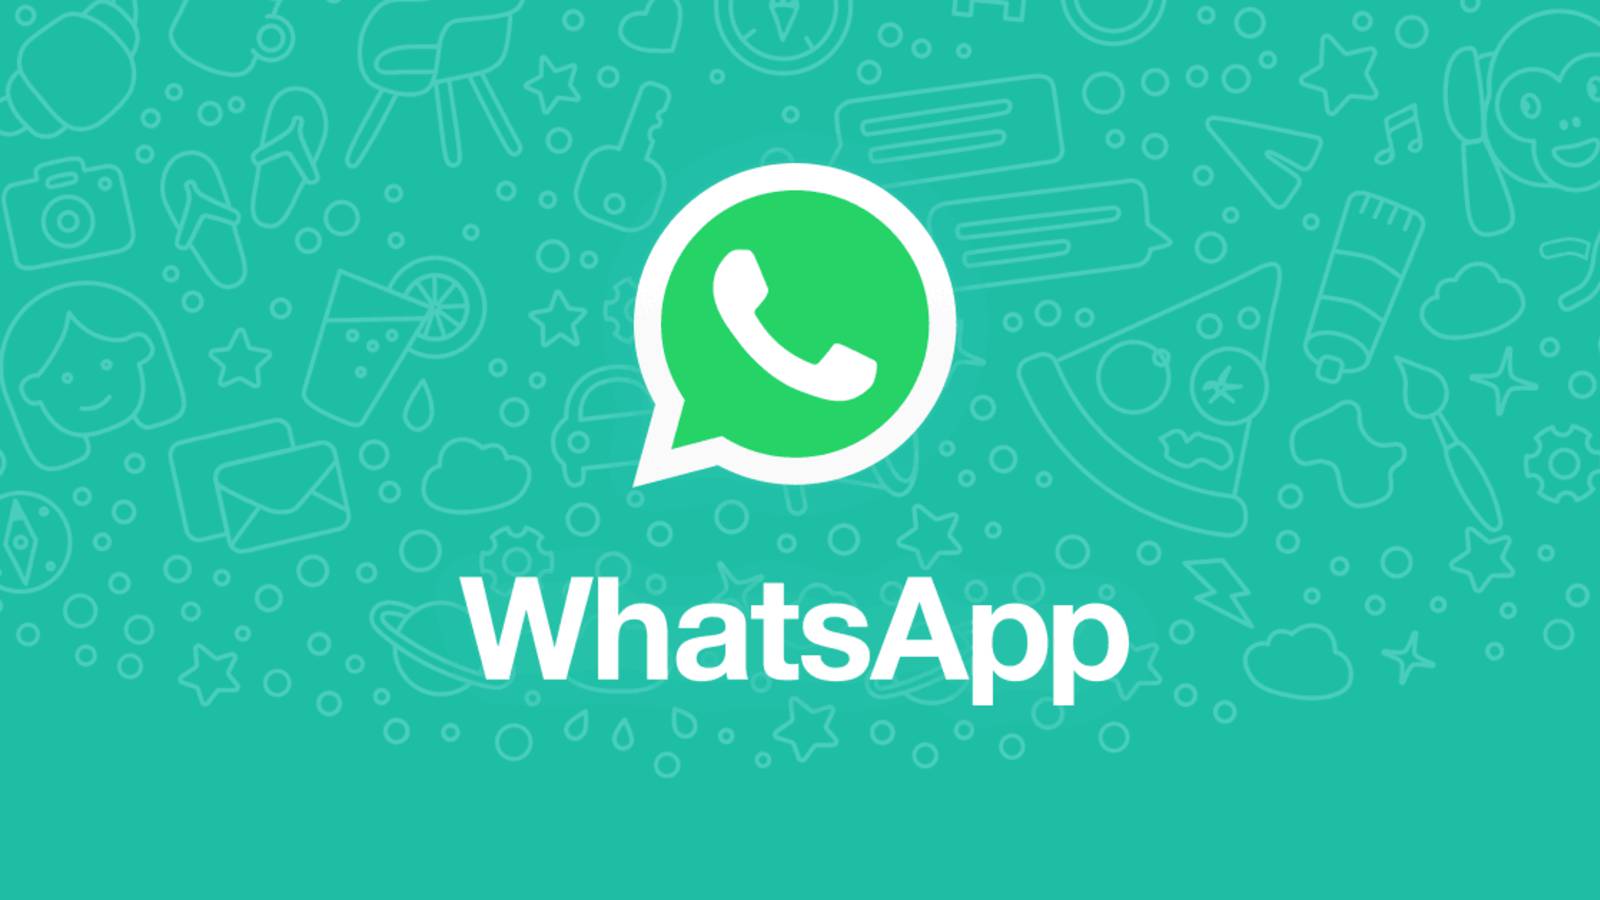 Modalità oscura beta di WhatsApp